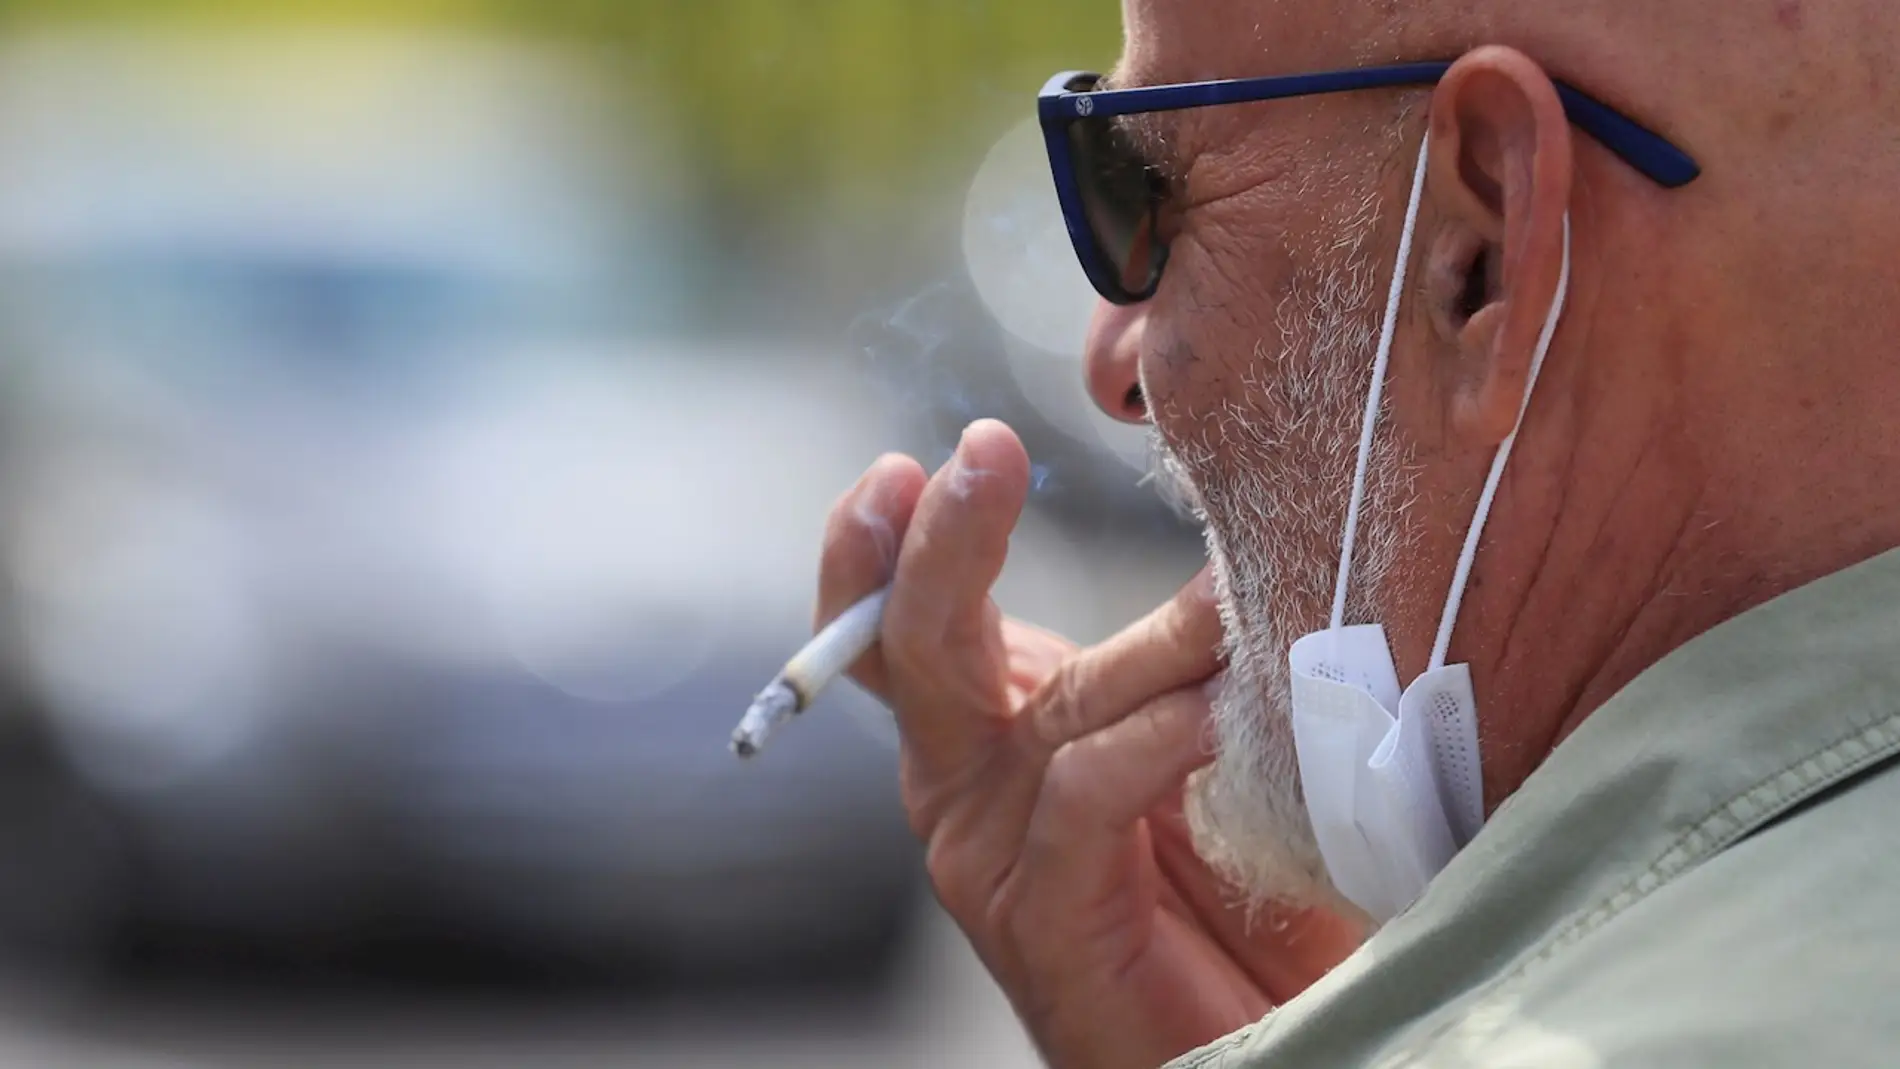 Sanidad propondrá que fumar en las terrazas esté prohibido aunque se cumpla la distancia